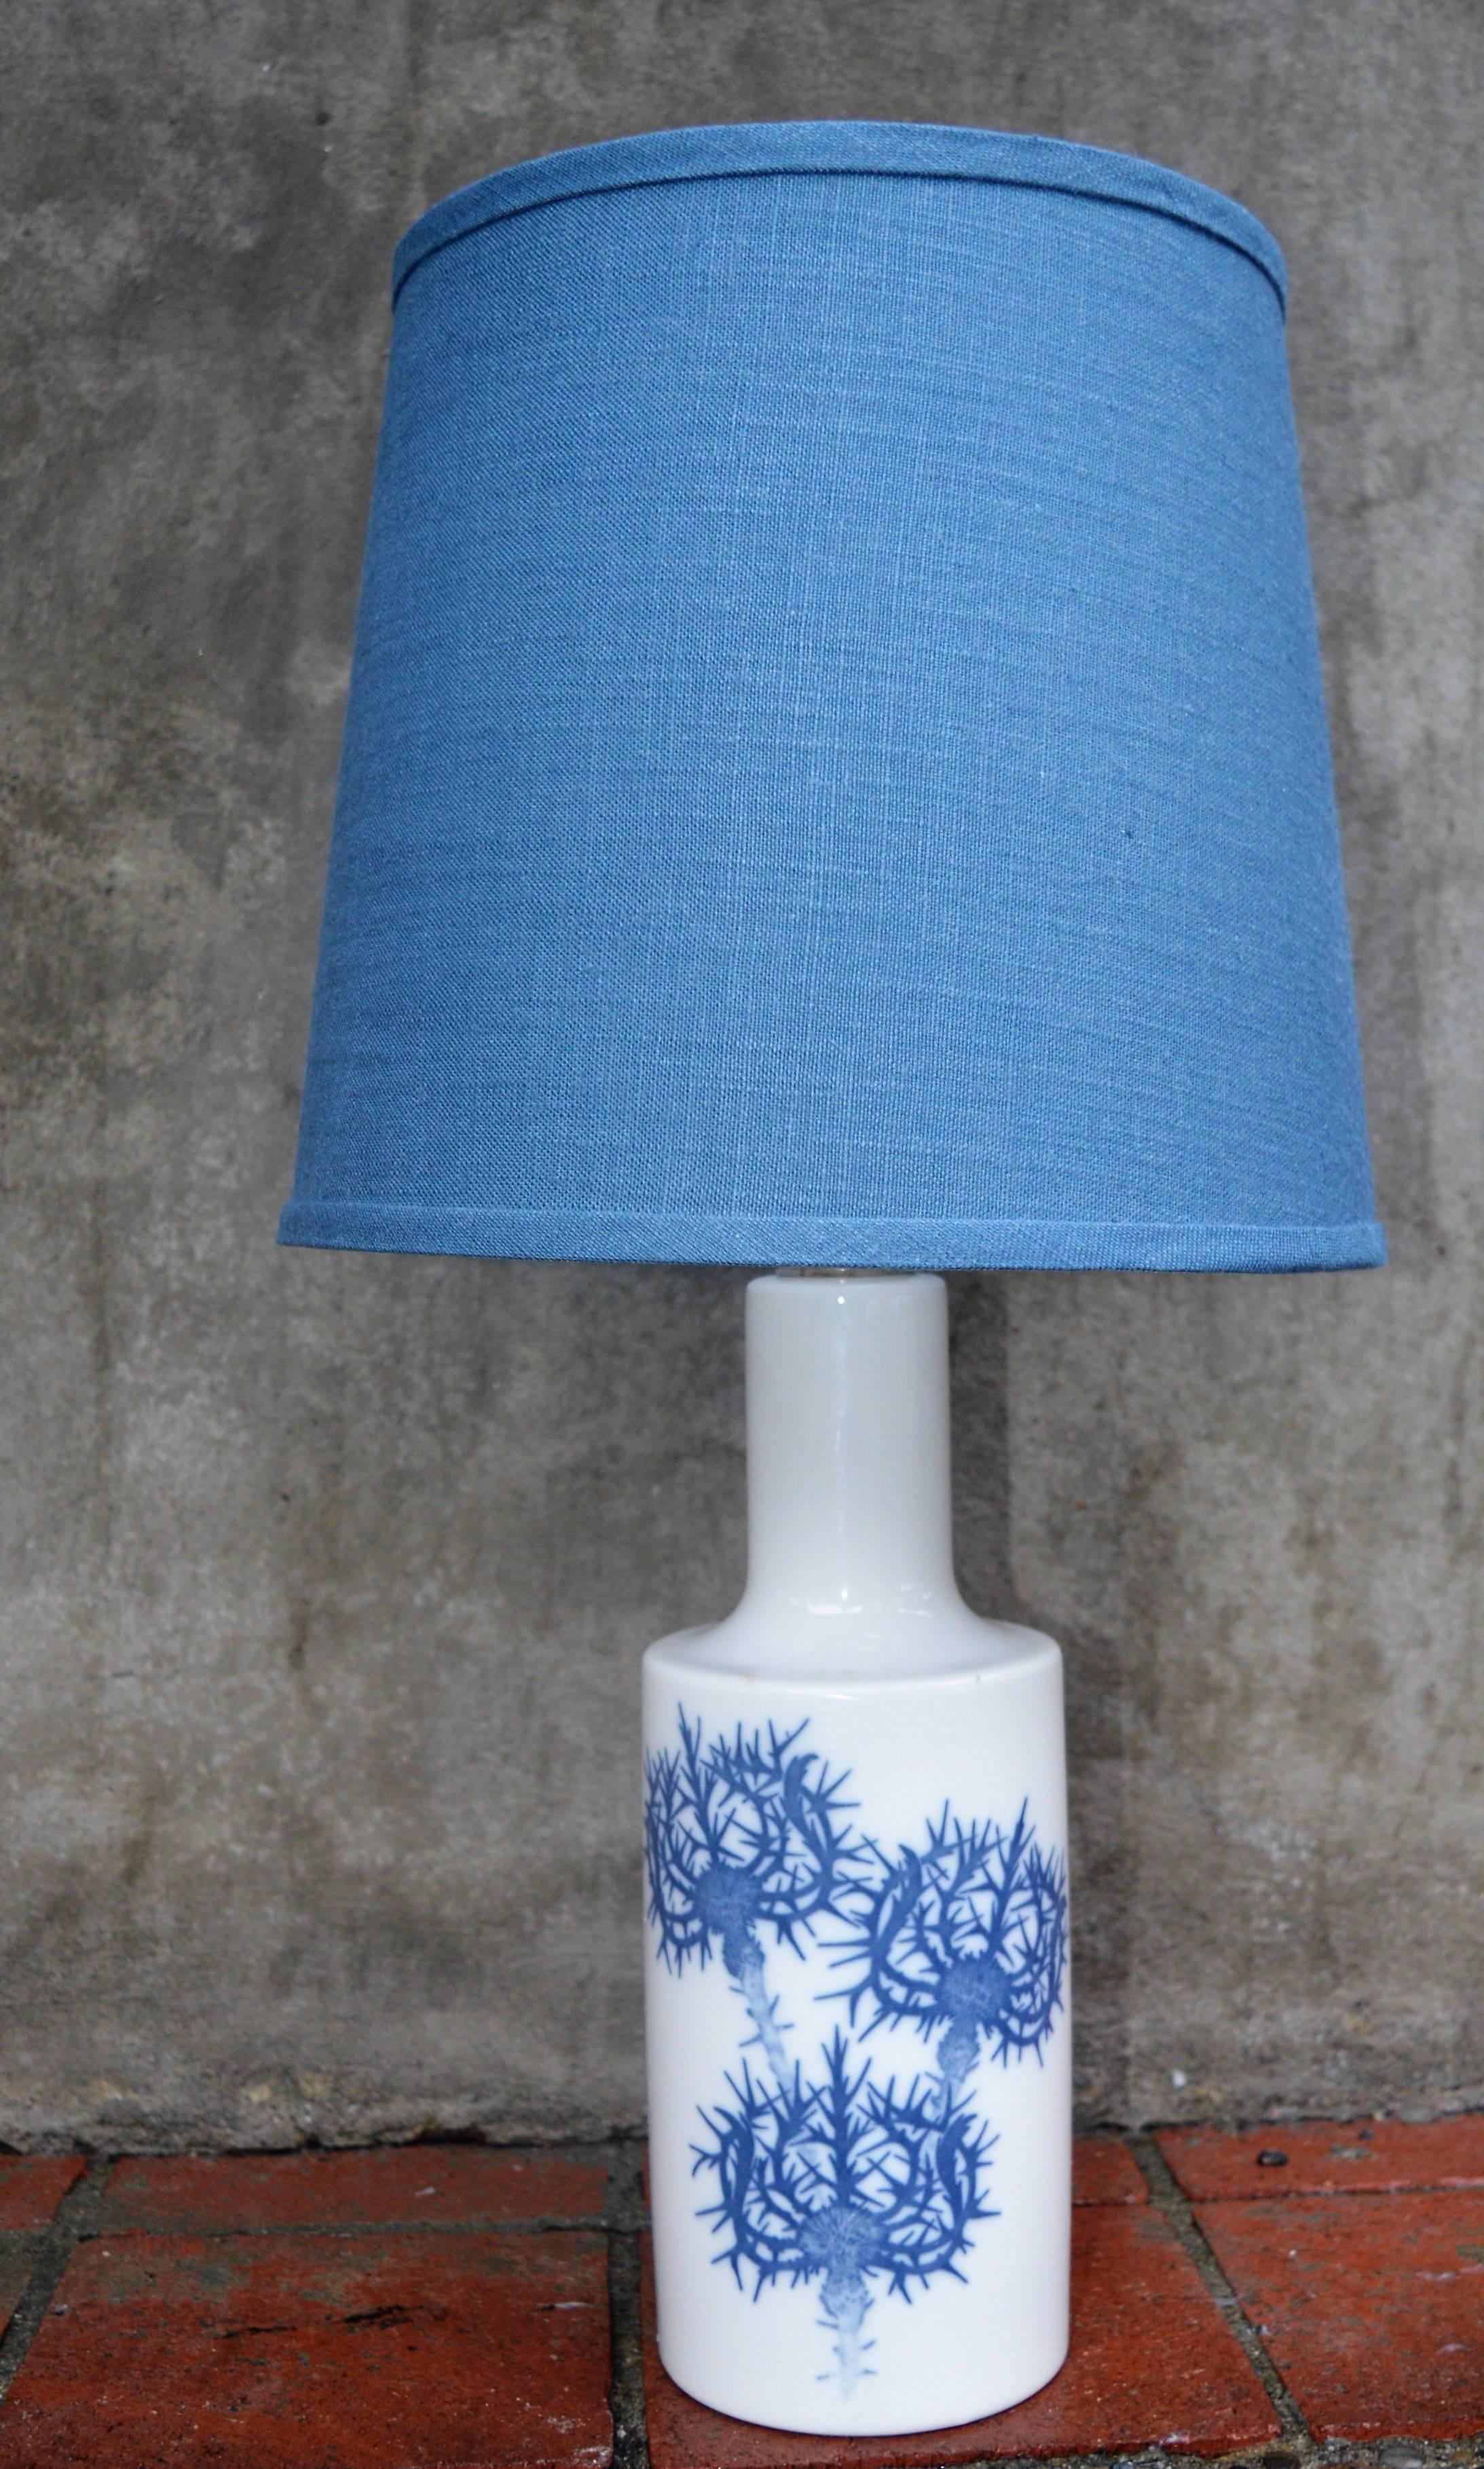 Mid-Century Modern Blue Ceramic Thistle Lamp by Fog & Mørup for Royal Copenhagen New Blue Shade